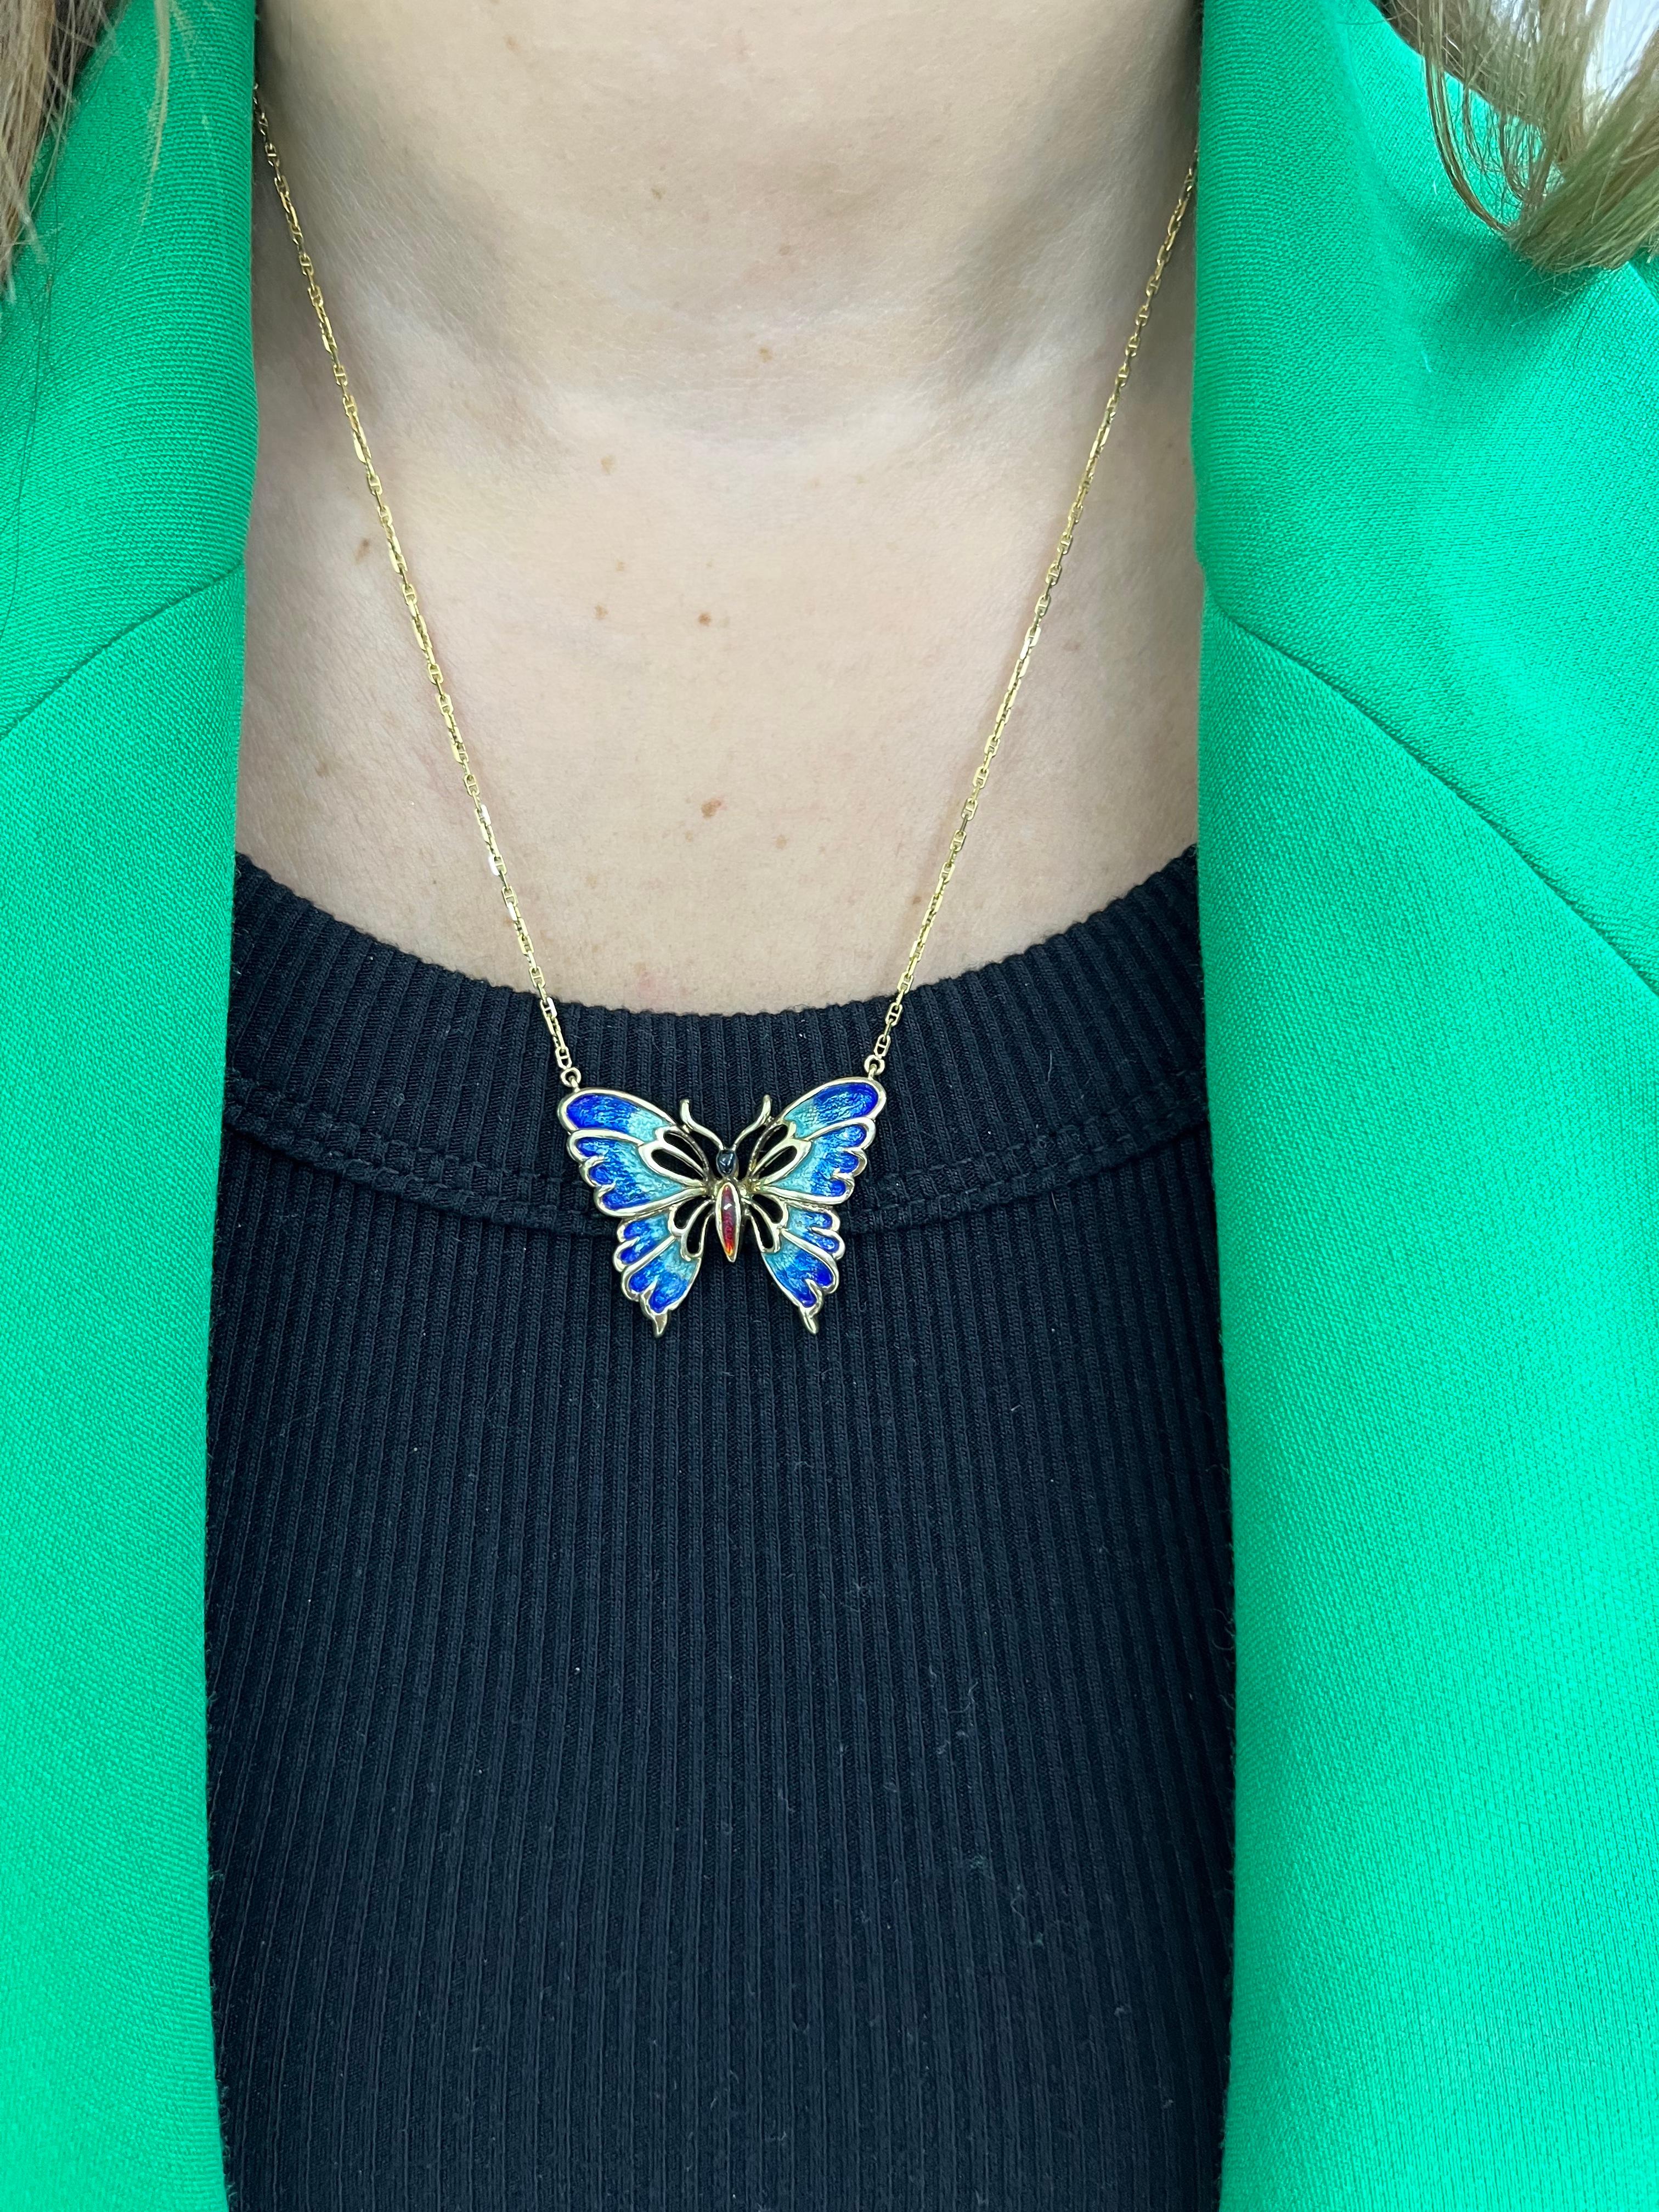 Women's Retro Enamel Butterfly Pendant Necklace 14k Yellow Gold